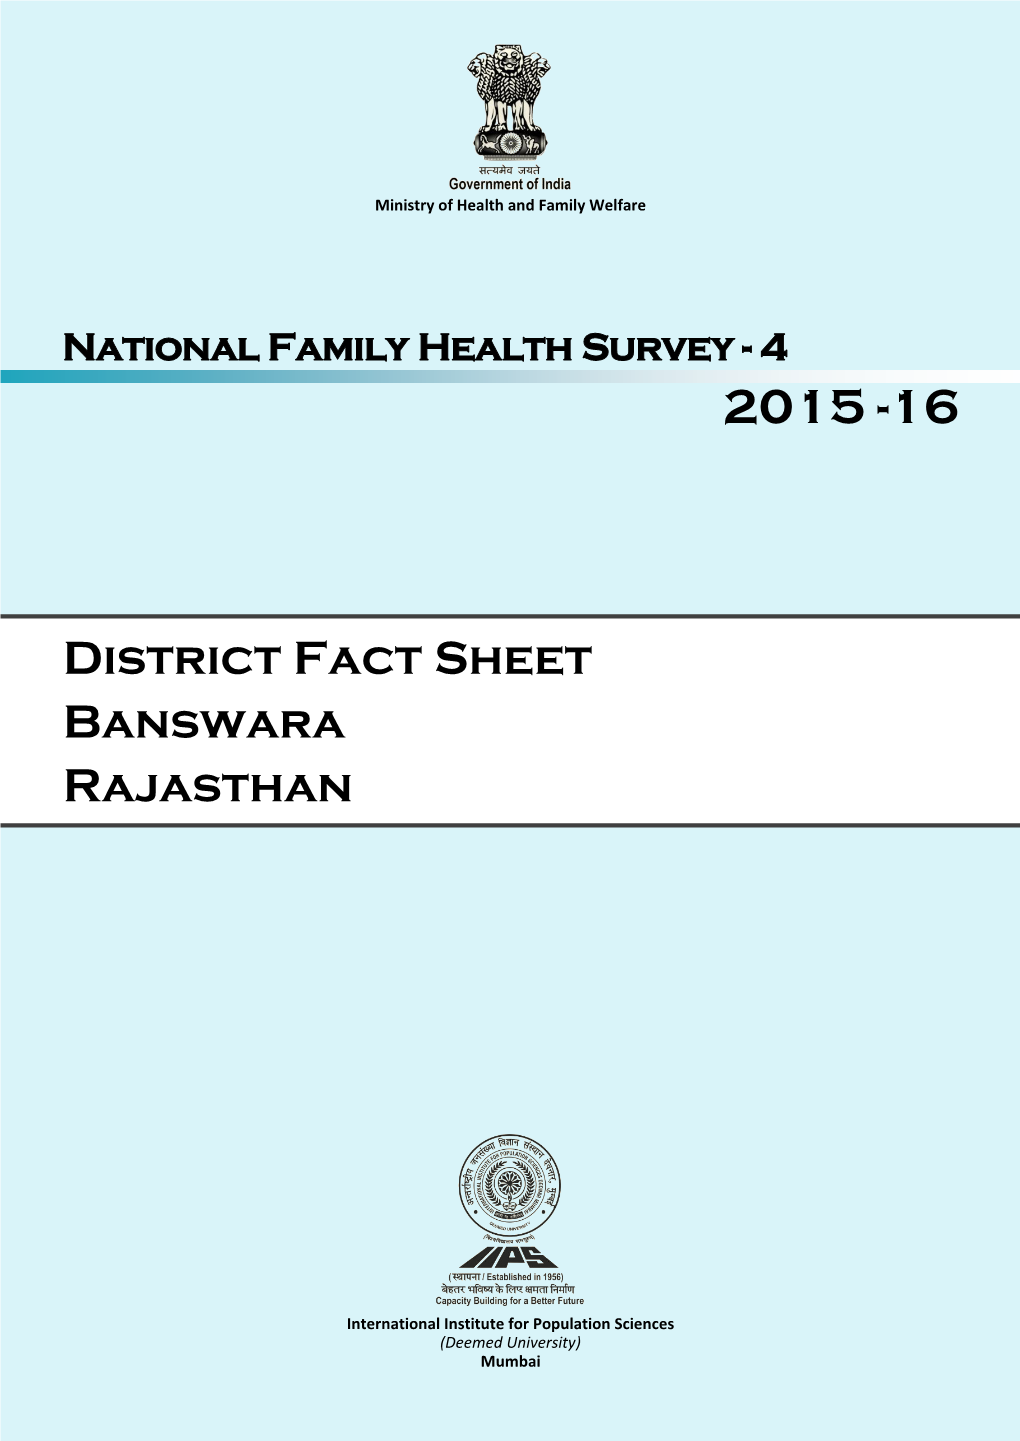 District Fact Sheet Banswara Rajasthan